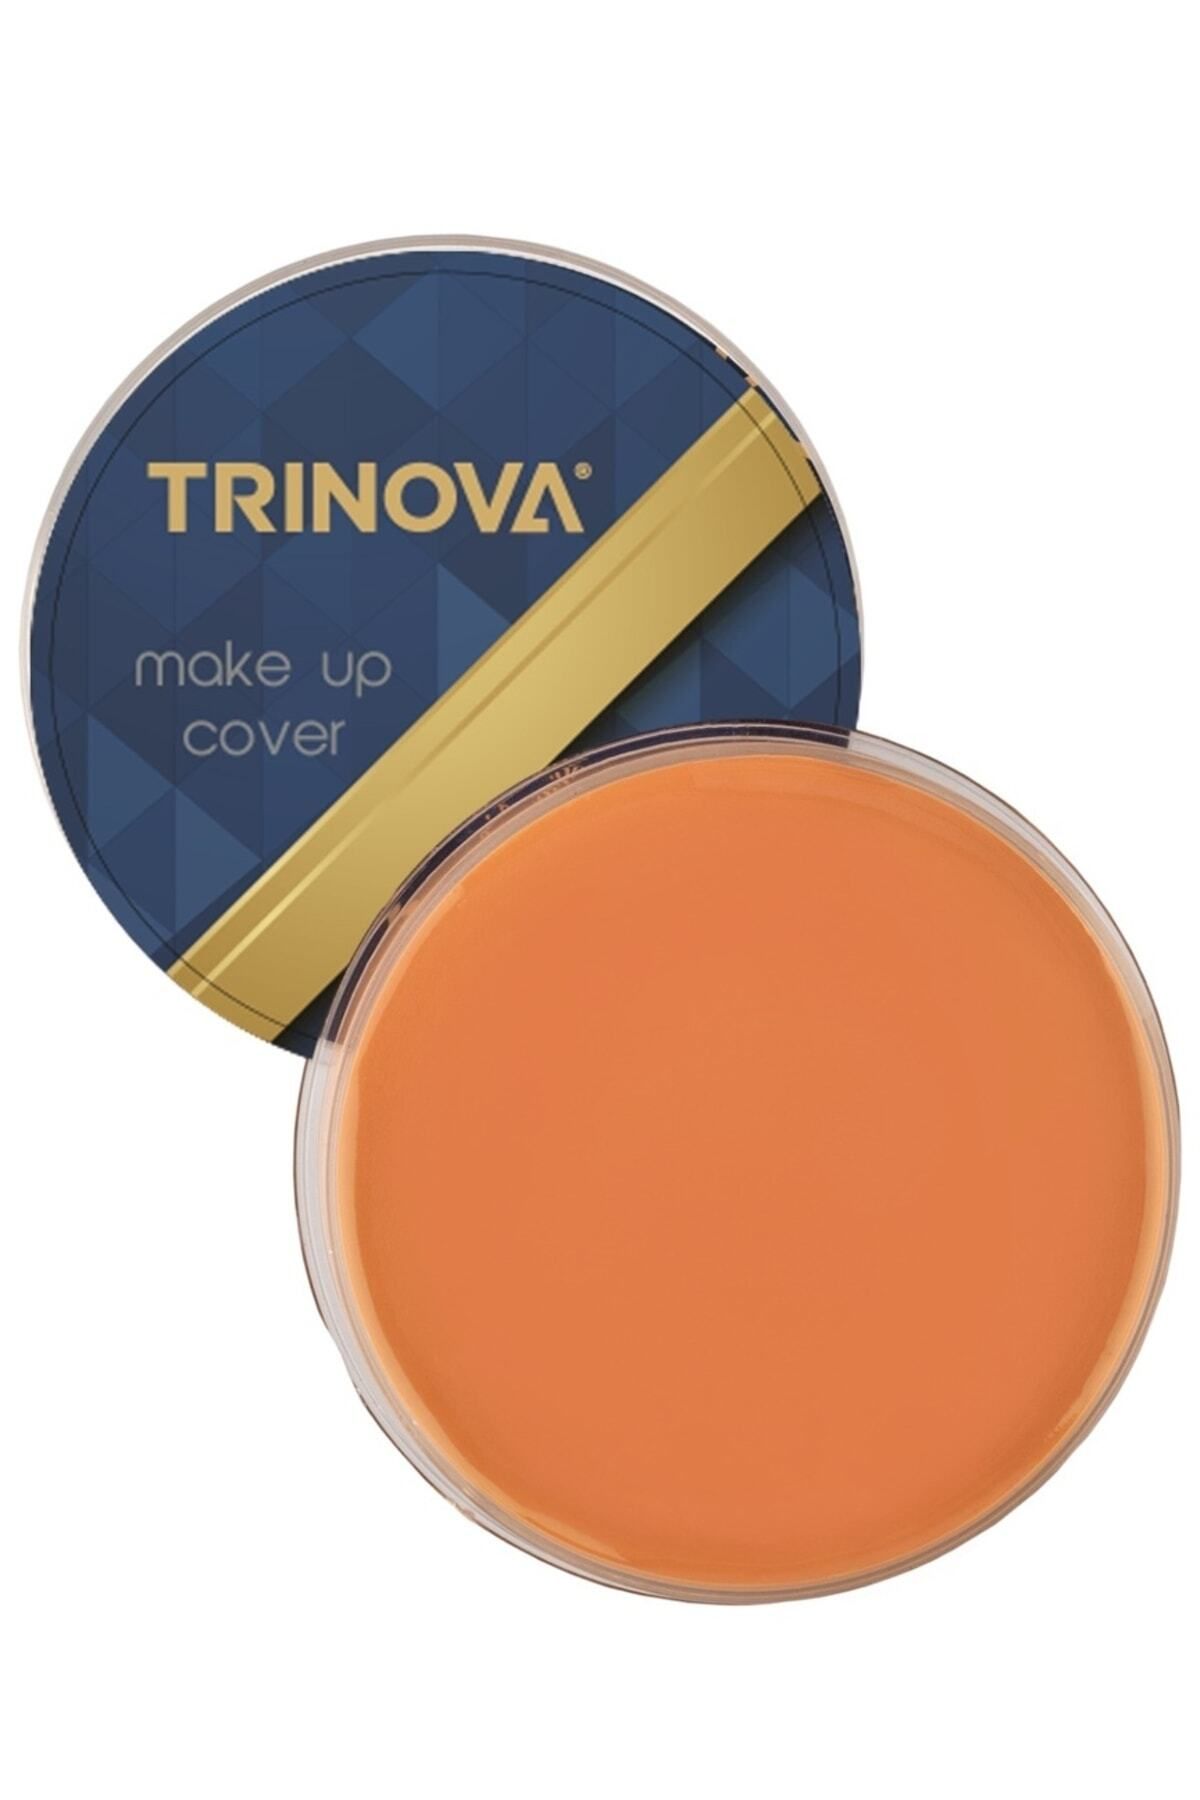 Trinova Makeup Cover Porselen Fondöten Koyu Ton